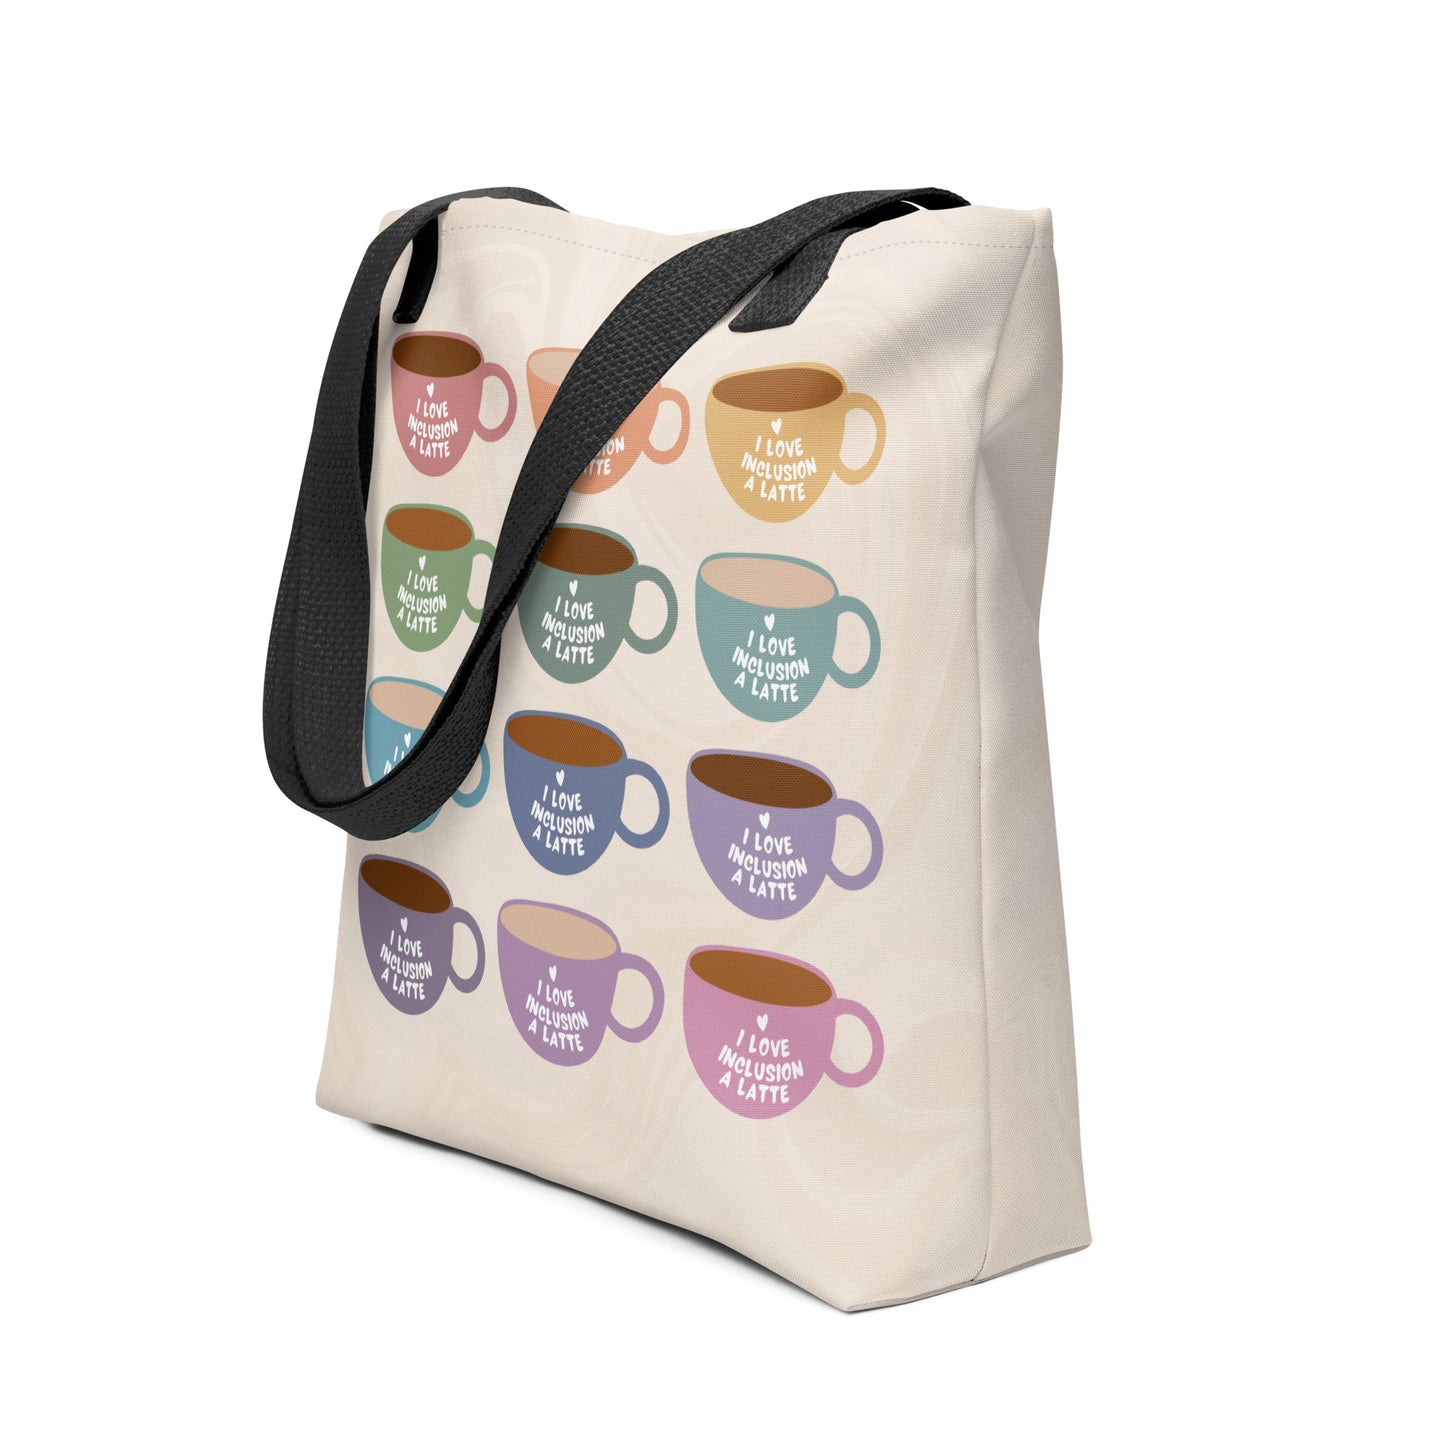 I Love Inclusion A Latte | Tote Bag